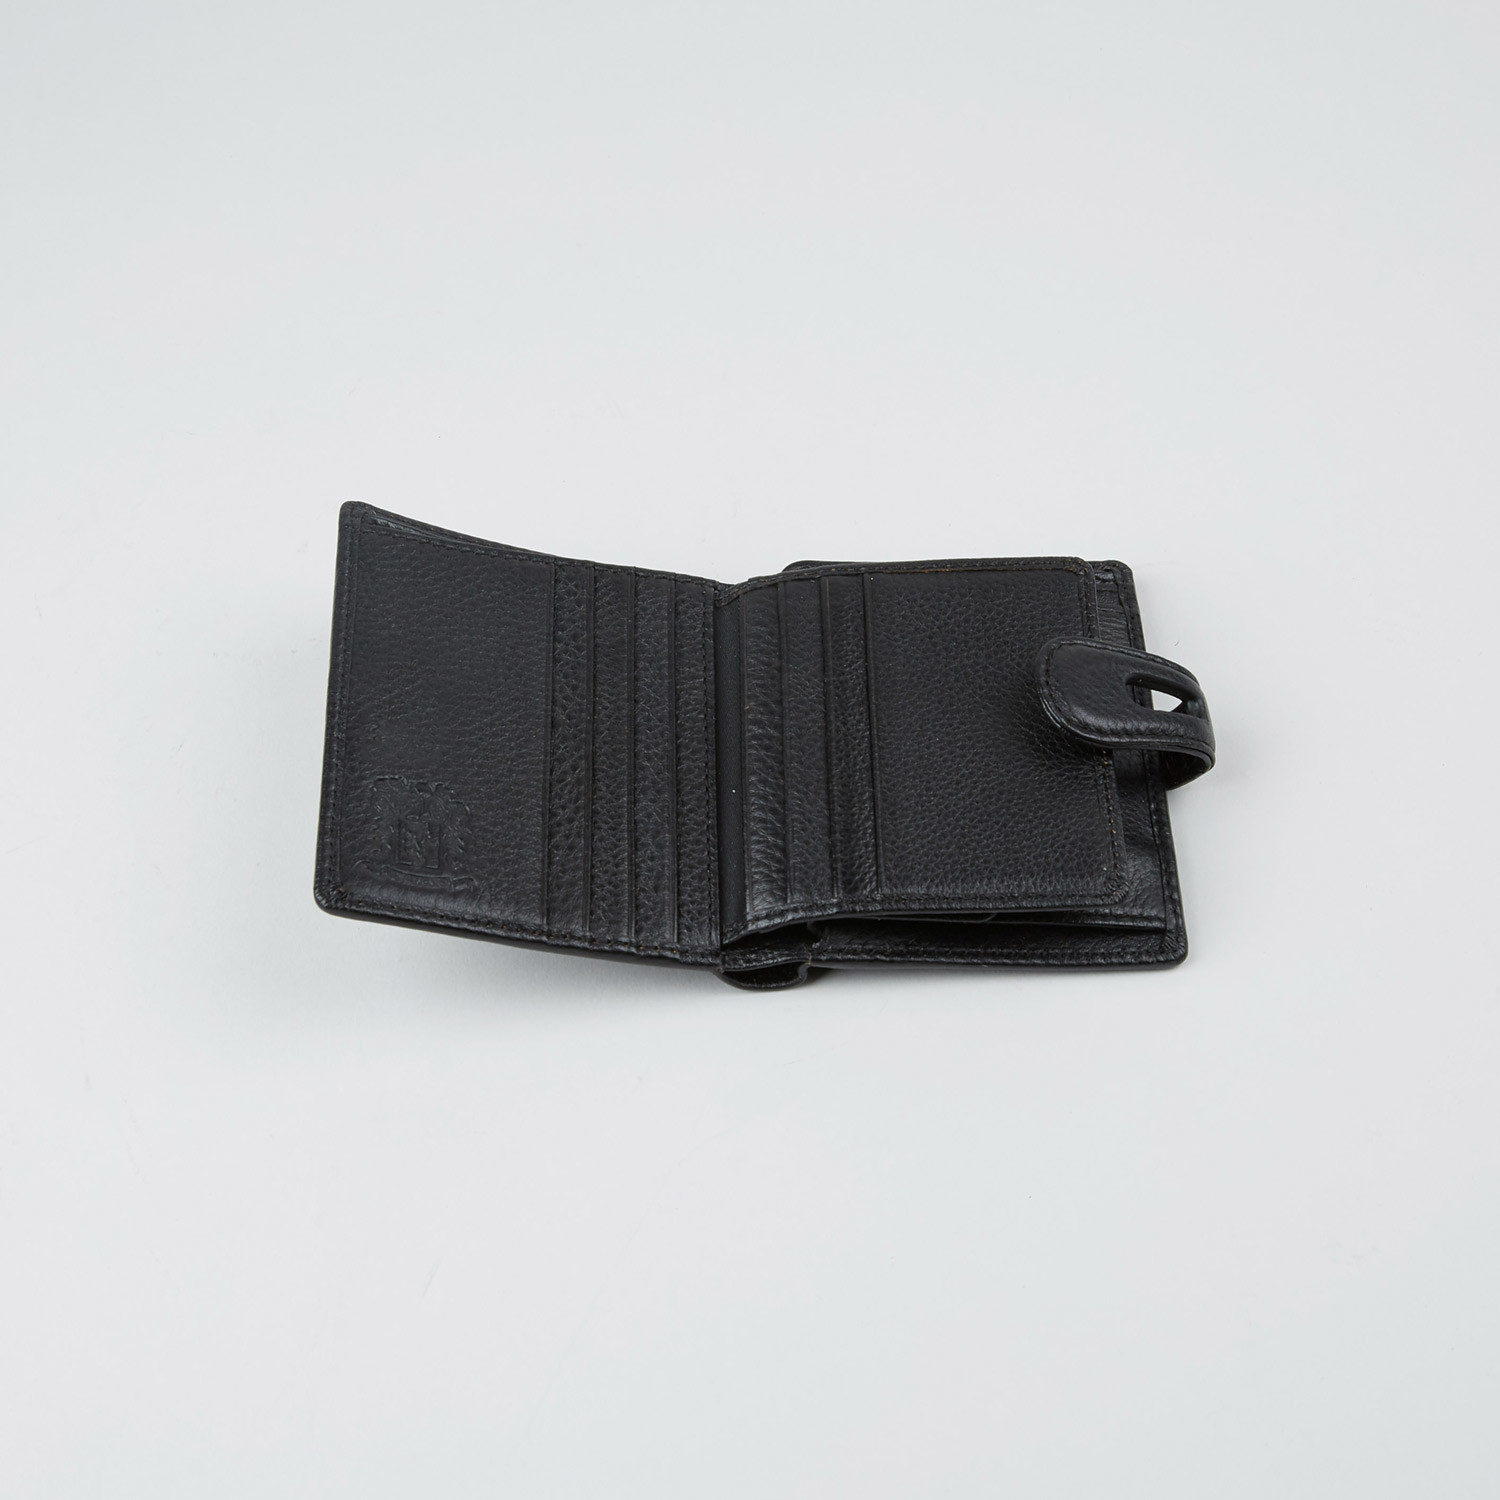 Napa Leather Wallet // Black - Portolano - Touch of Modern